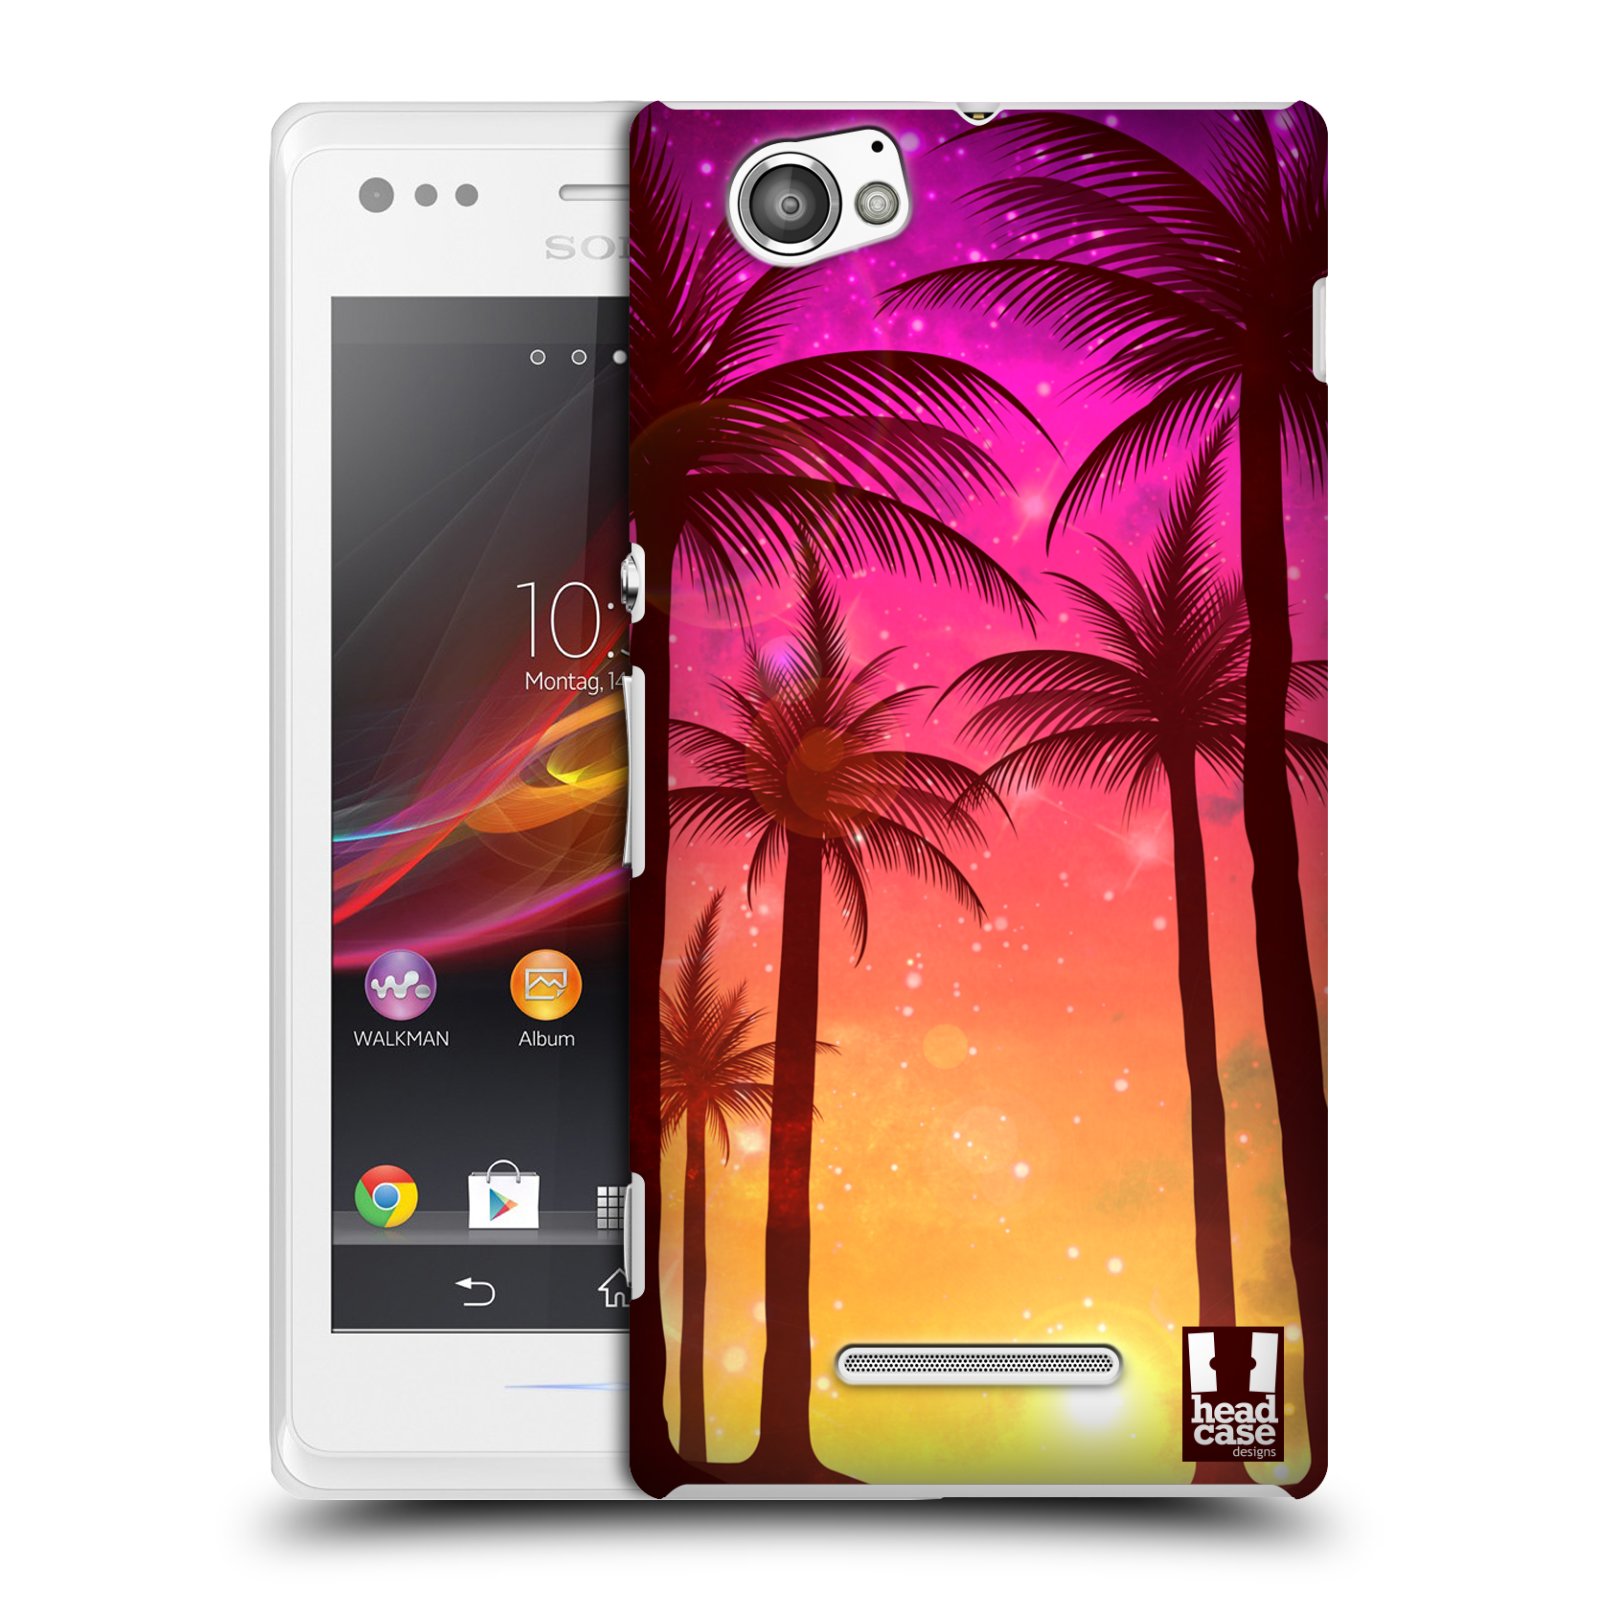 HEAD CASE plastový obal na mobil Sony Xperia M vzor Kreslený motiv silueta moře a palmy RŮŽOVÁ